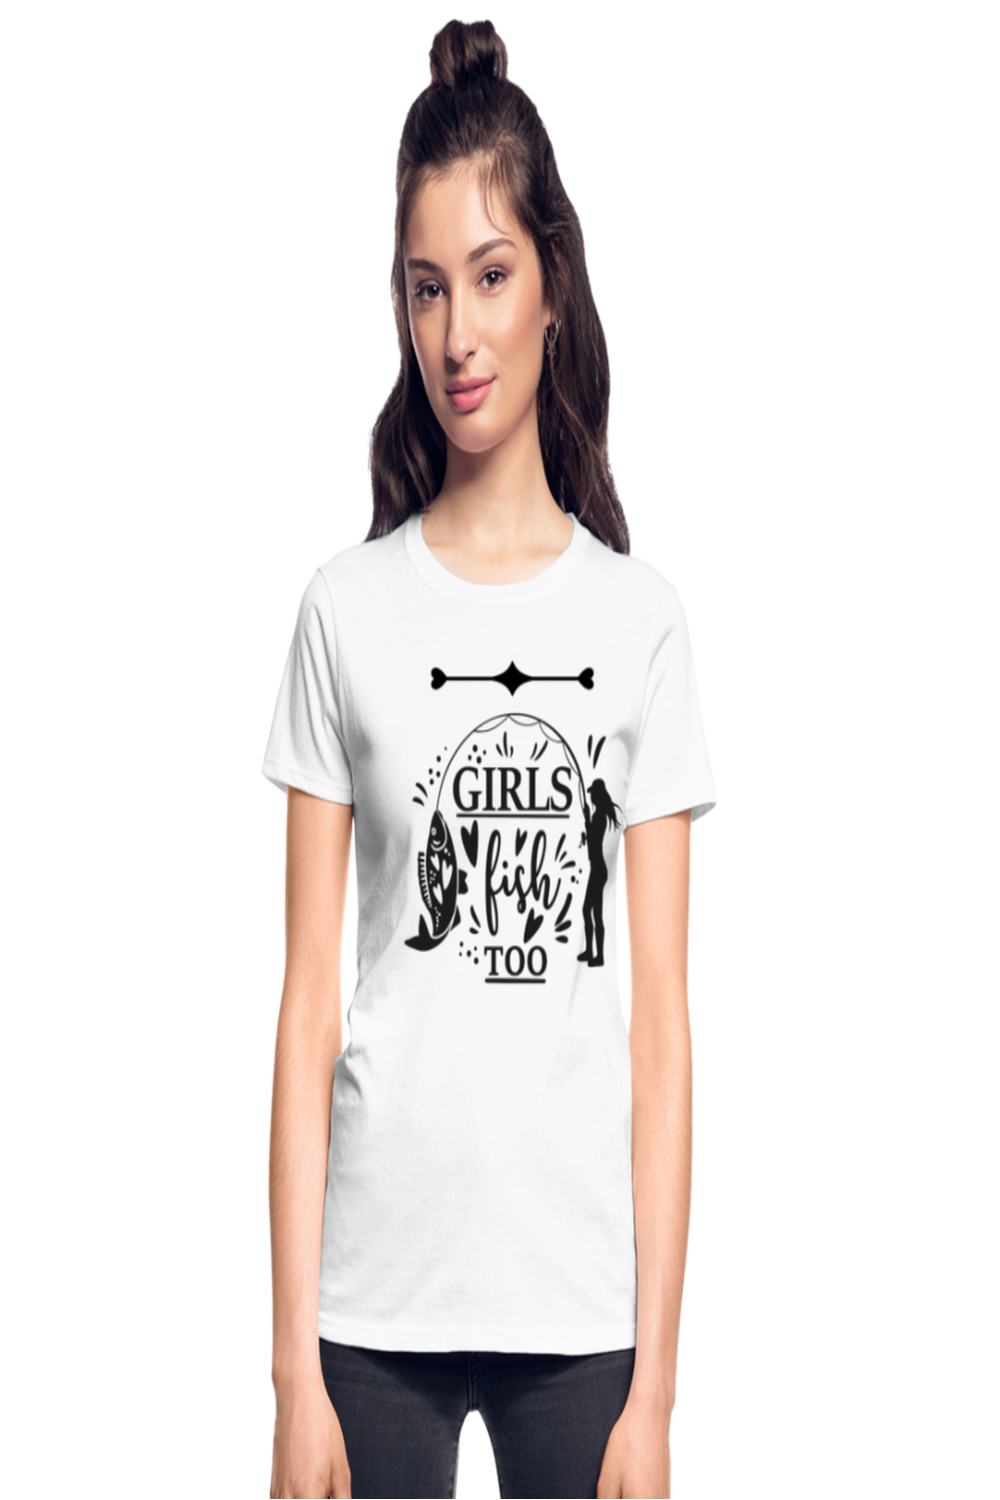 Girls Fish Too Women Short Sleeve T-Shirt - white - NicholesGifts.online